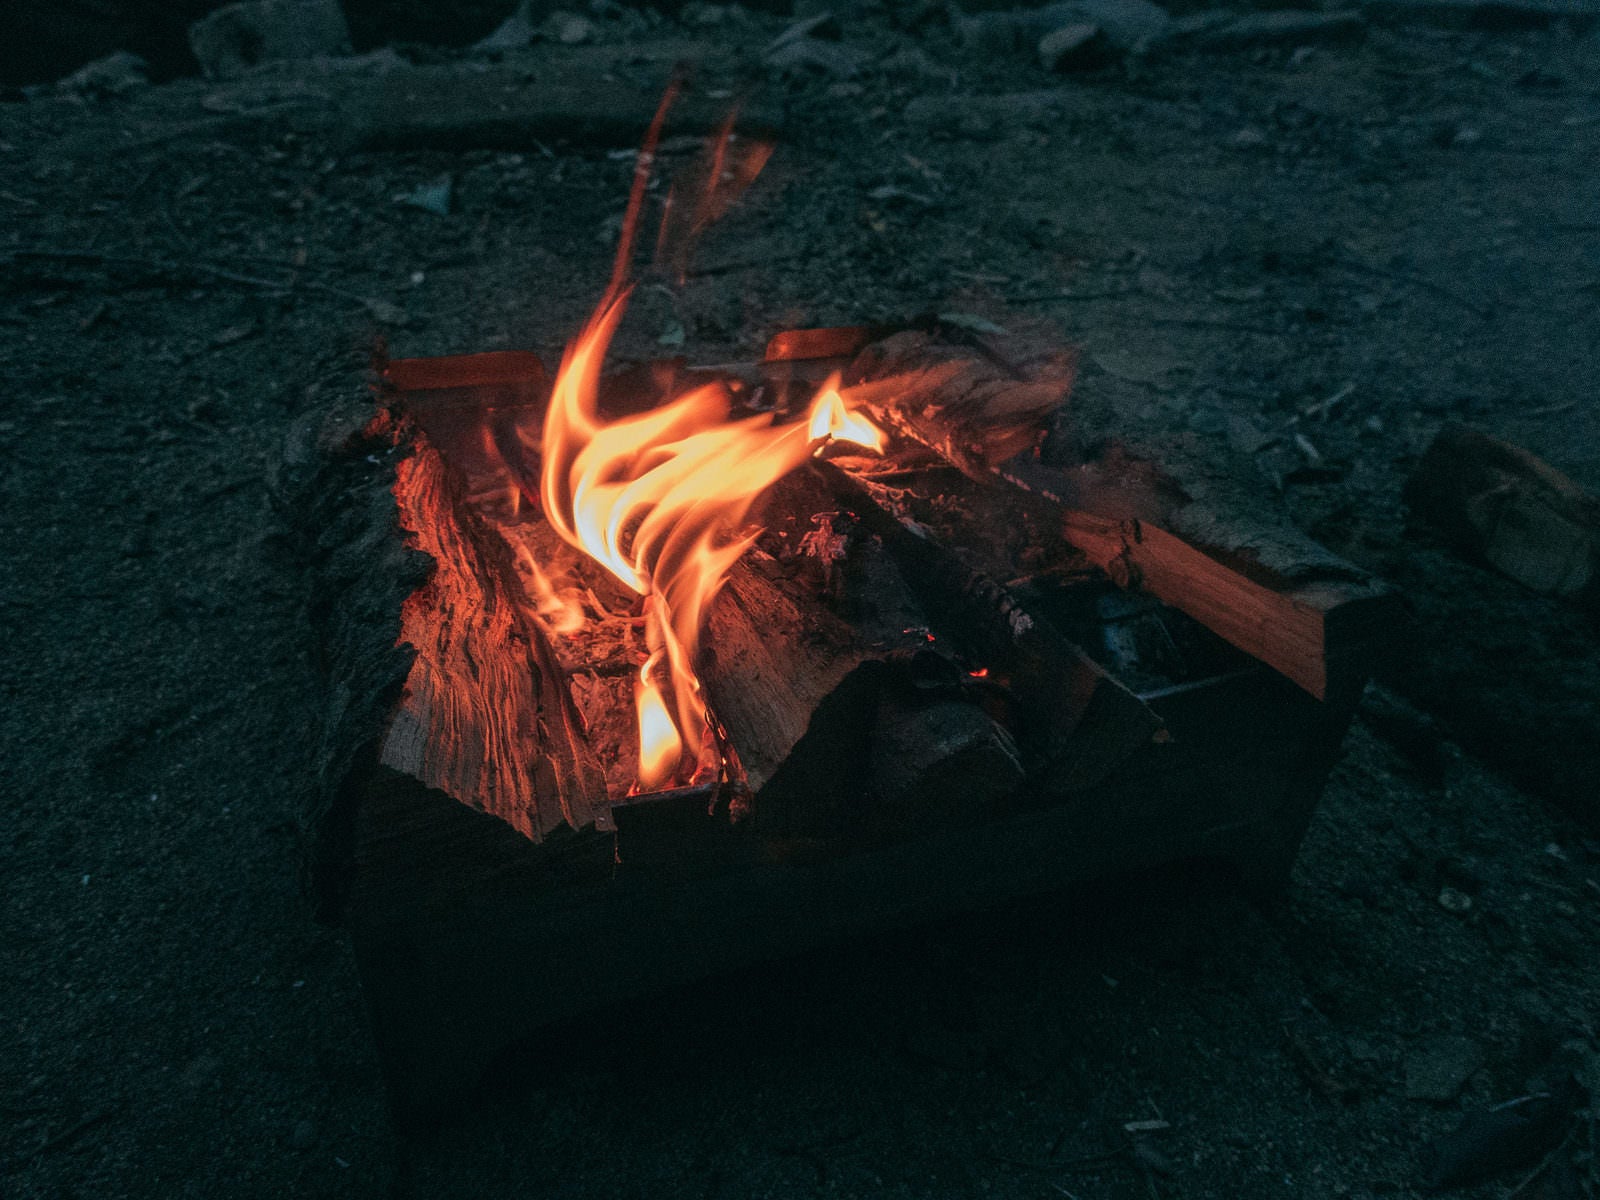 「キャンプファイヤーの炎の揺らぎ」の写真